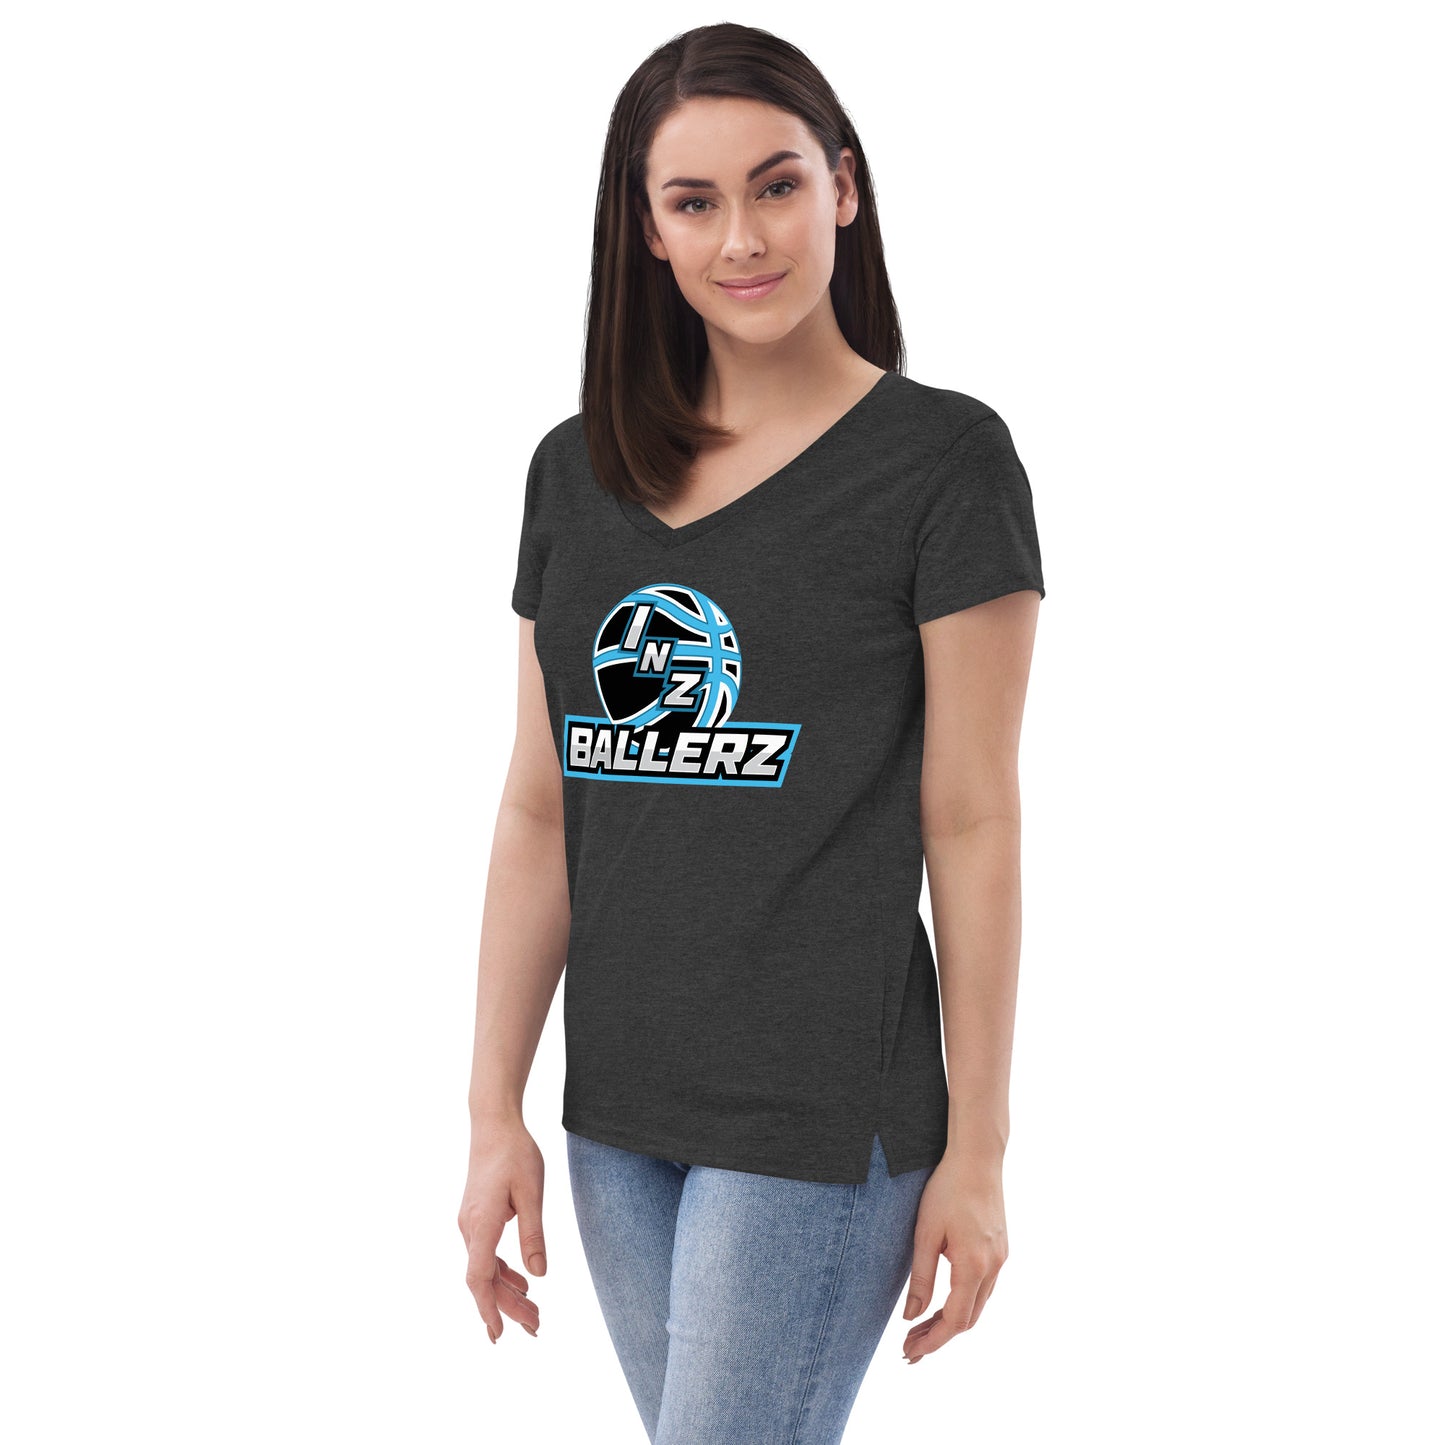 Women’s INZ Ballerz V-neck t-shirt